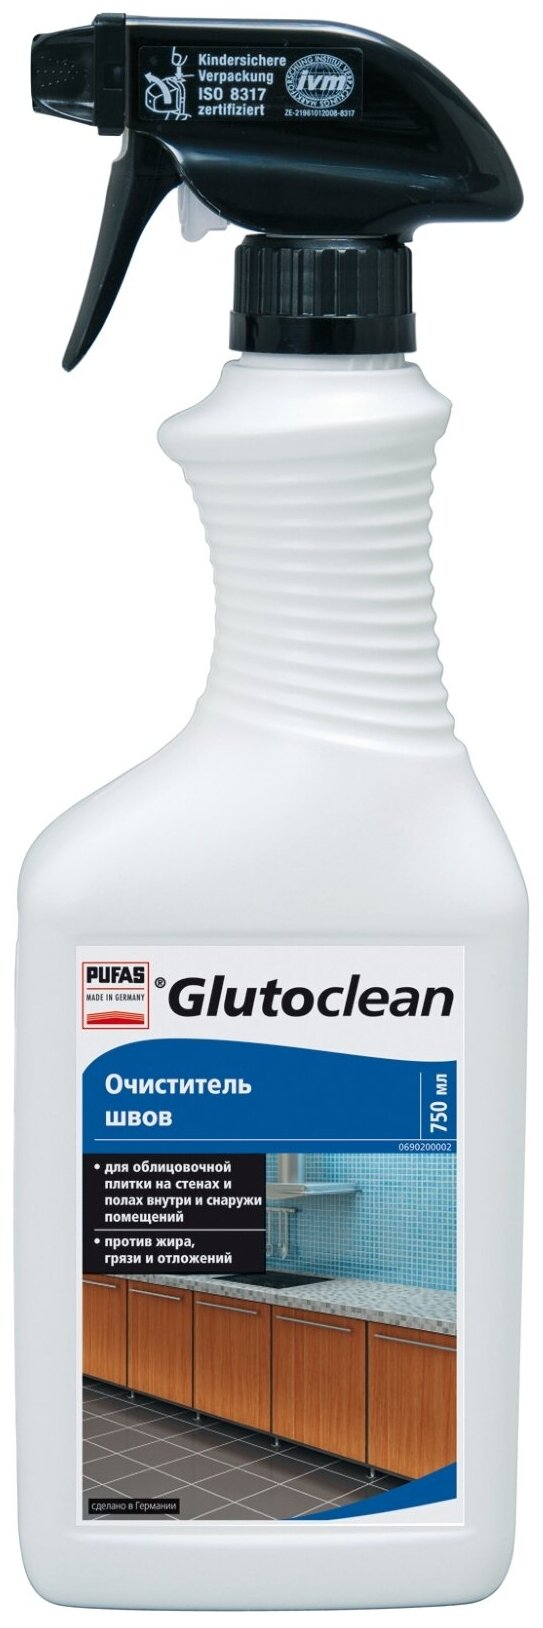 Очиститель швов Glutoclean